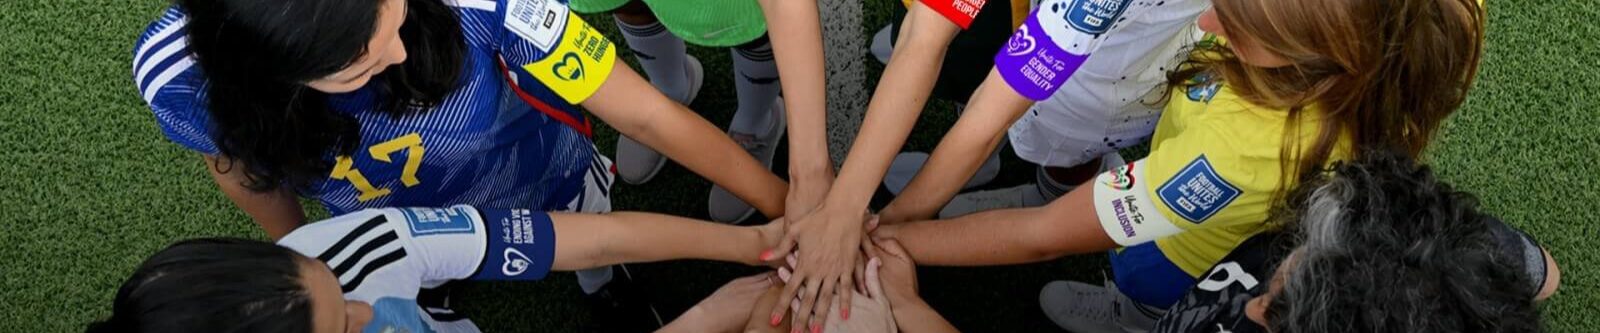 Frauenfußball-WM 2023: Spielerinnen vereinen Hände in einem Kreis.